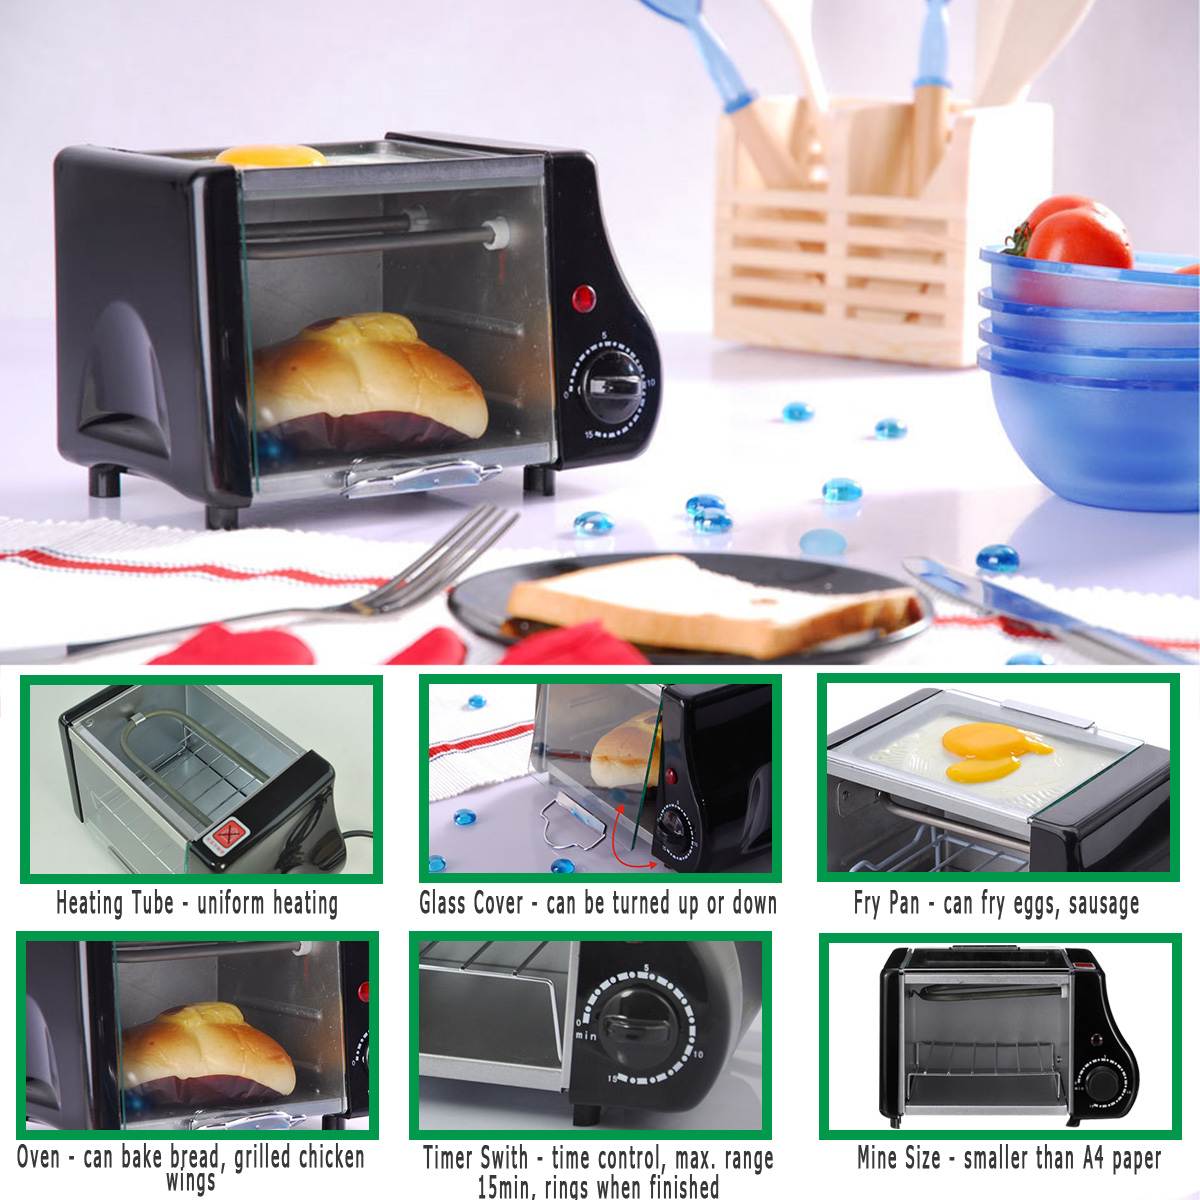 Multifunktionale Mini Ofen Haushalt Elektrische Ofen zeitliche Koordinierung Backen Getrocknete Obst Grill Brot Pizza Backen Küche Maschine 220V